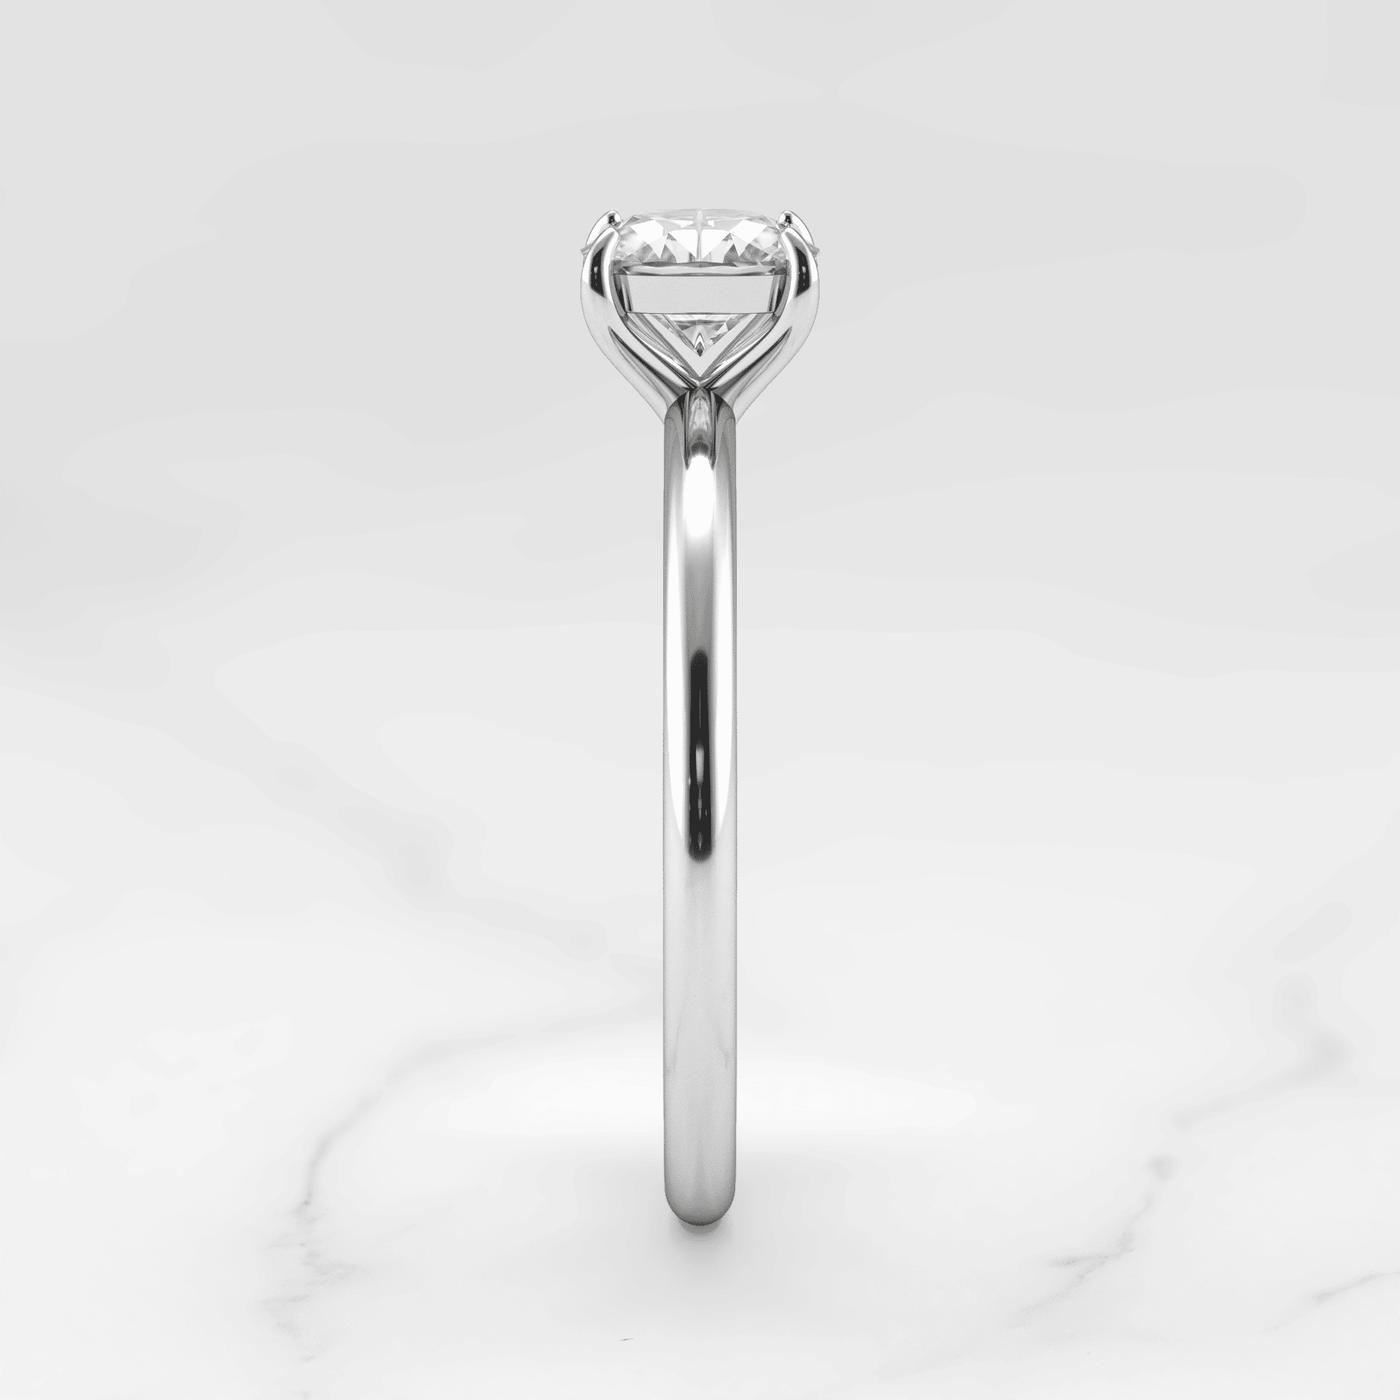 Cushion-Cut Solitaire Diamond Ring